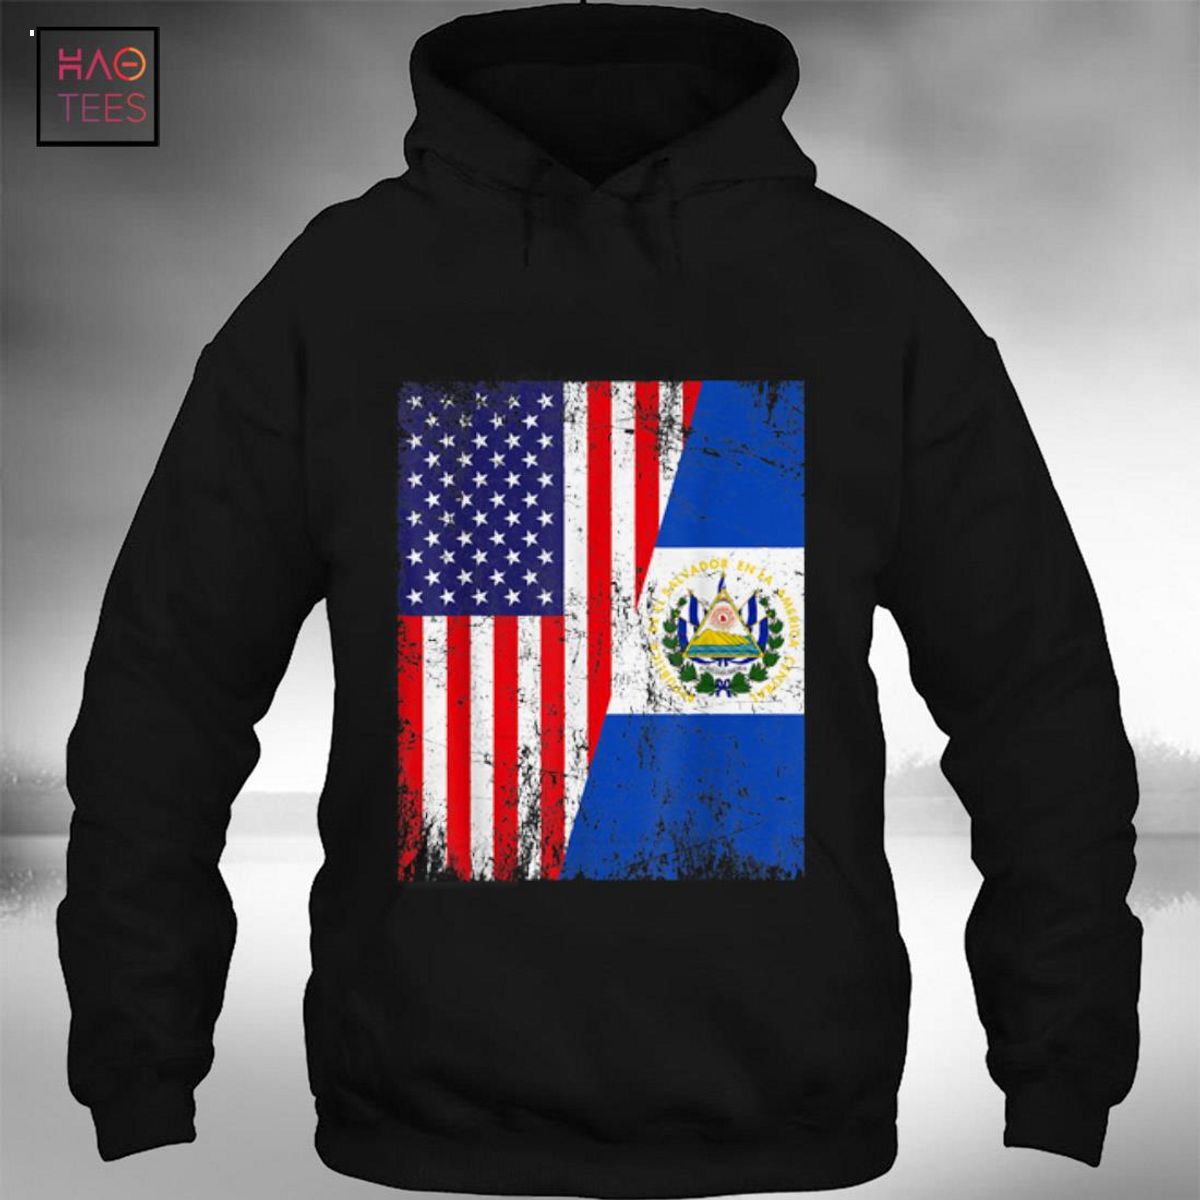 Distressed American Flag & El Salvador Flag Patriotic Shirt